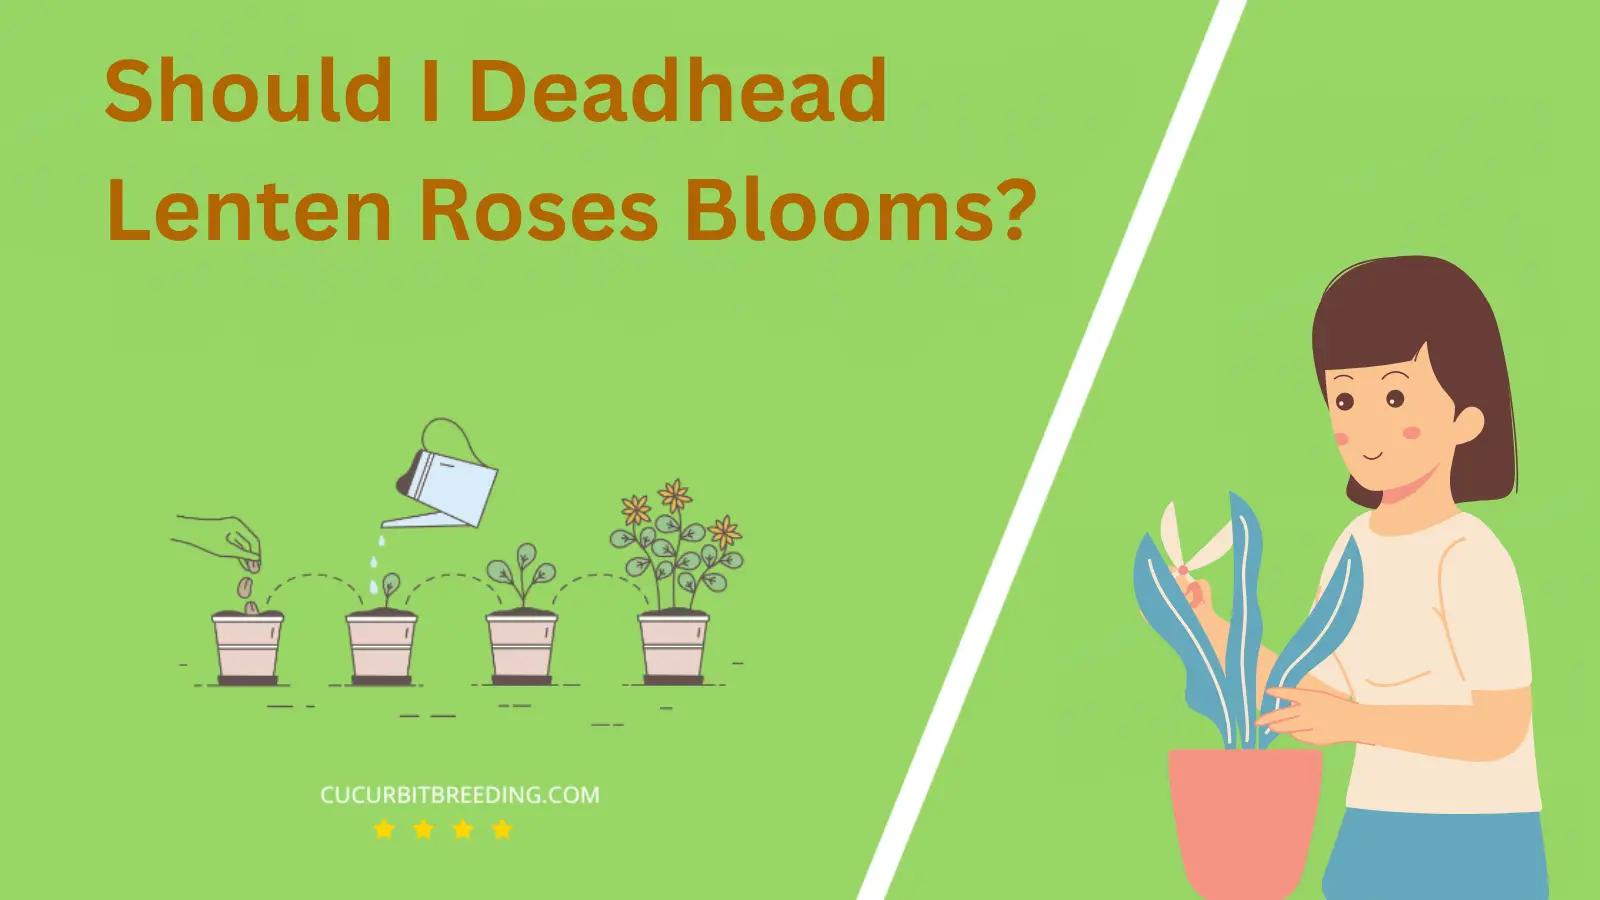 Should I Deadhead Lenten Roses Blooms?